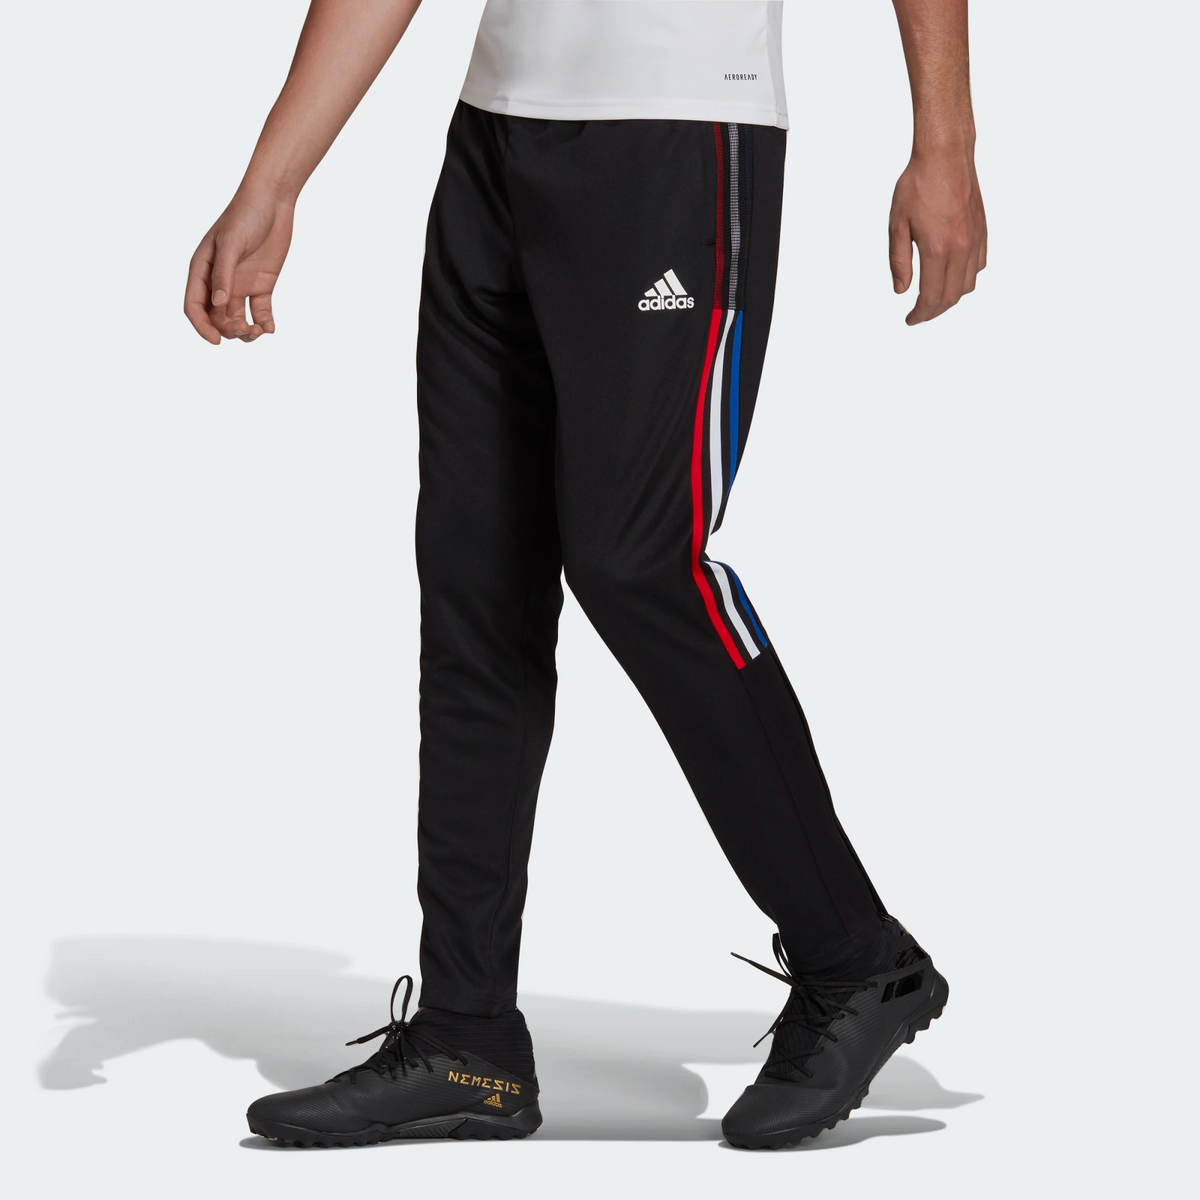 http://shopsportive.com/cdn/shop/products/Adidas-Men-s-Tiro-Track-Pants-Black-Royal-Blue-Vivid-Red-Sportive-1306_1200x1200.png?v=1709880409